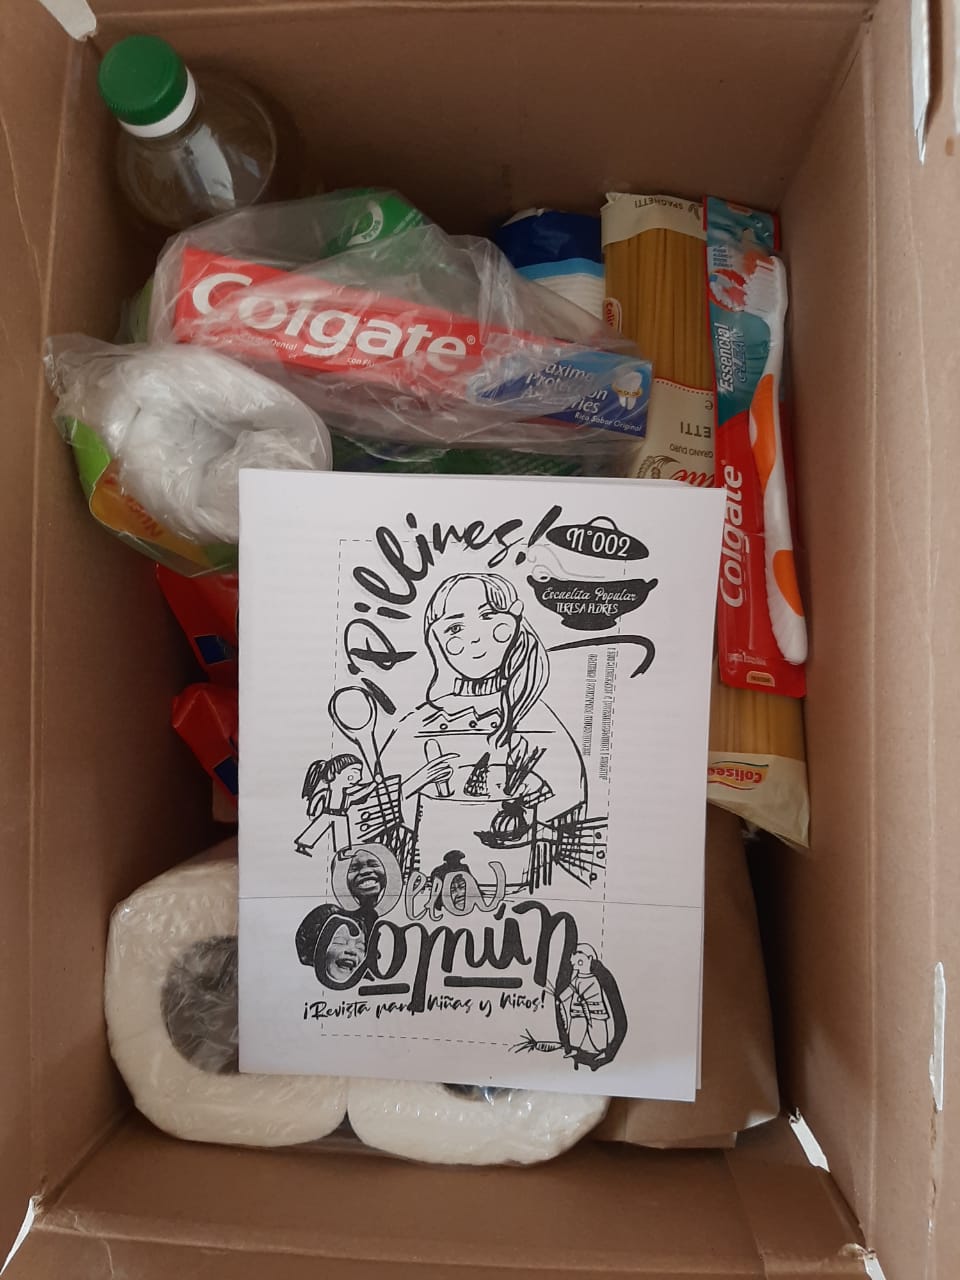 Actividades para niñes, fanzine Pillines en cajas de alimentos